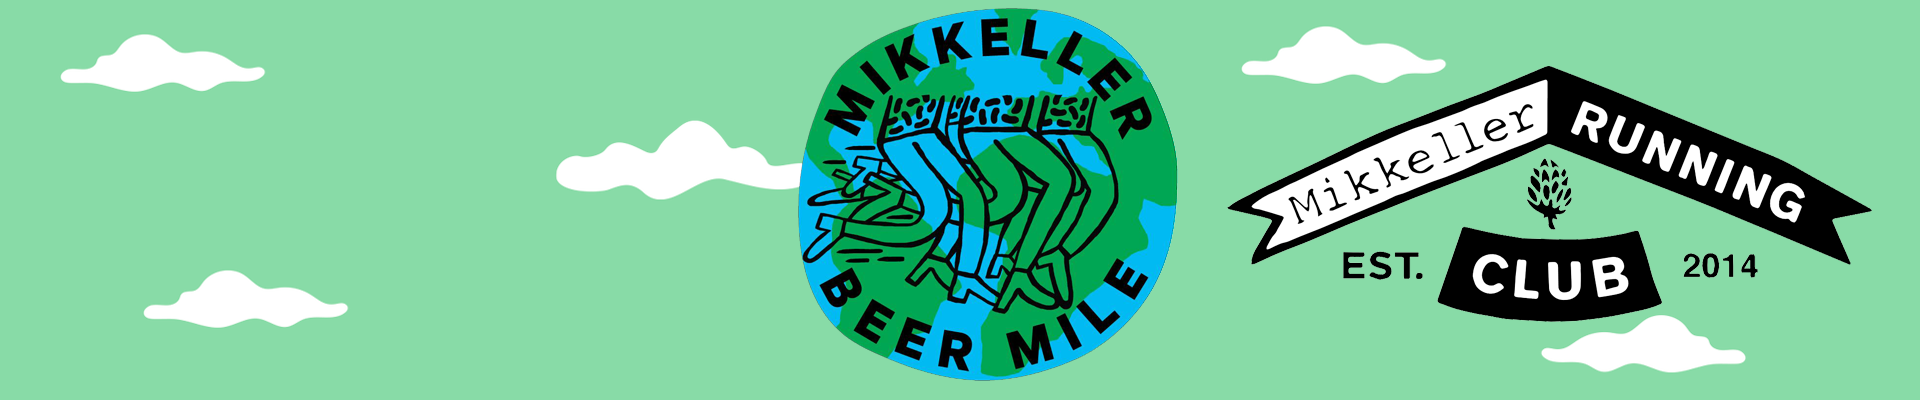 Mikkeller Beer Mile - Aarhus 2019